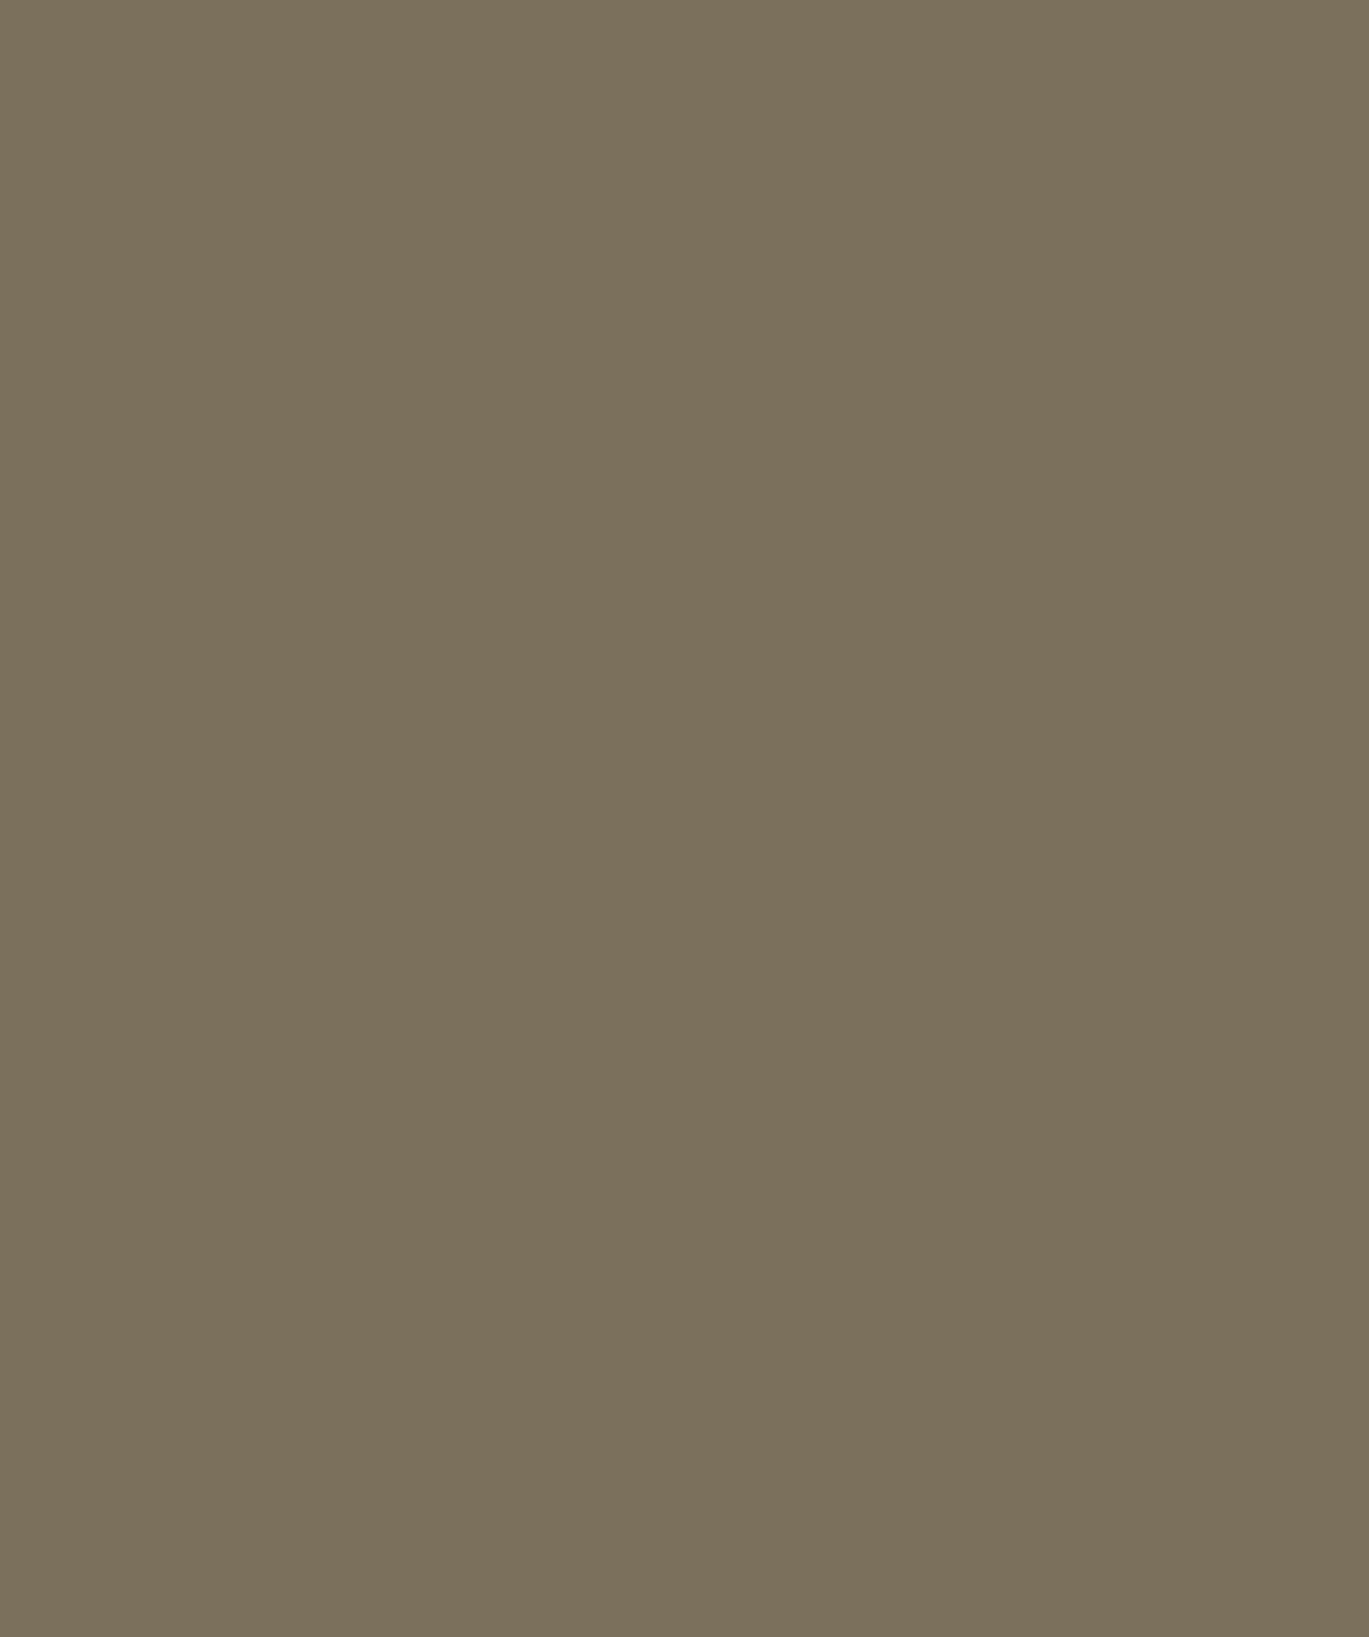 Леонид Пастернак. Дирижер В.И. Сук. Не ранее 1906. Донецкий областной художественный музей, Украина